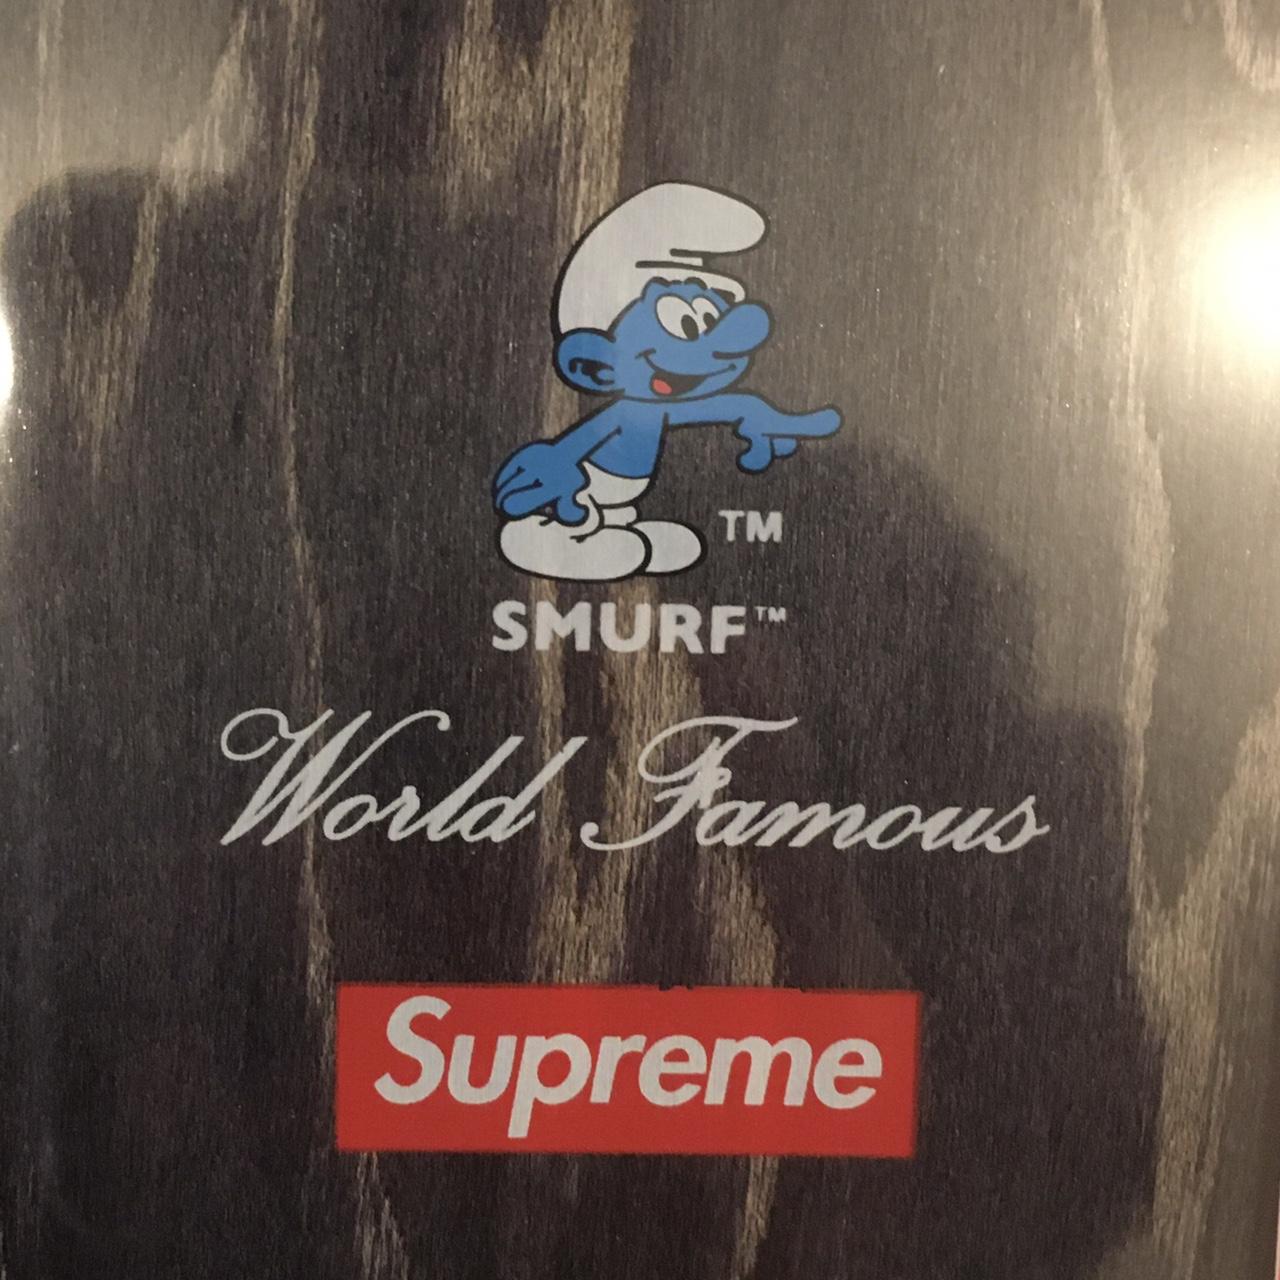 Supreme smurfs skate board / deck - Depop